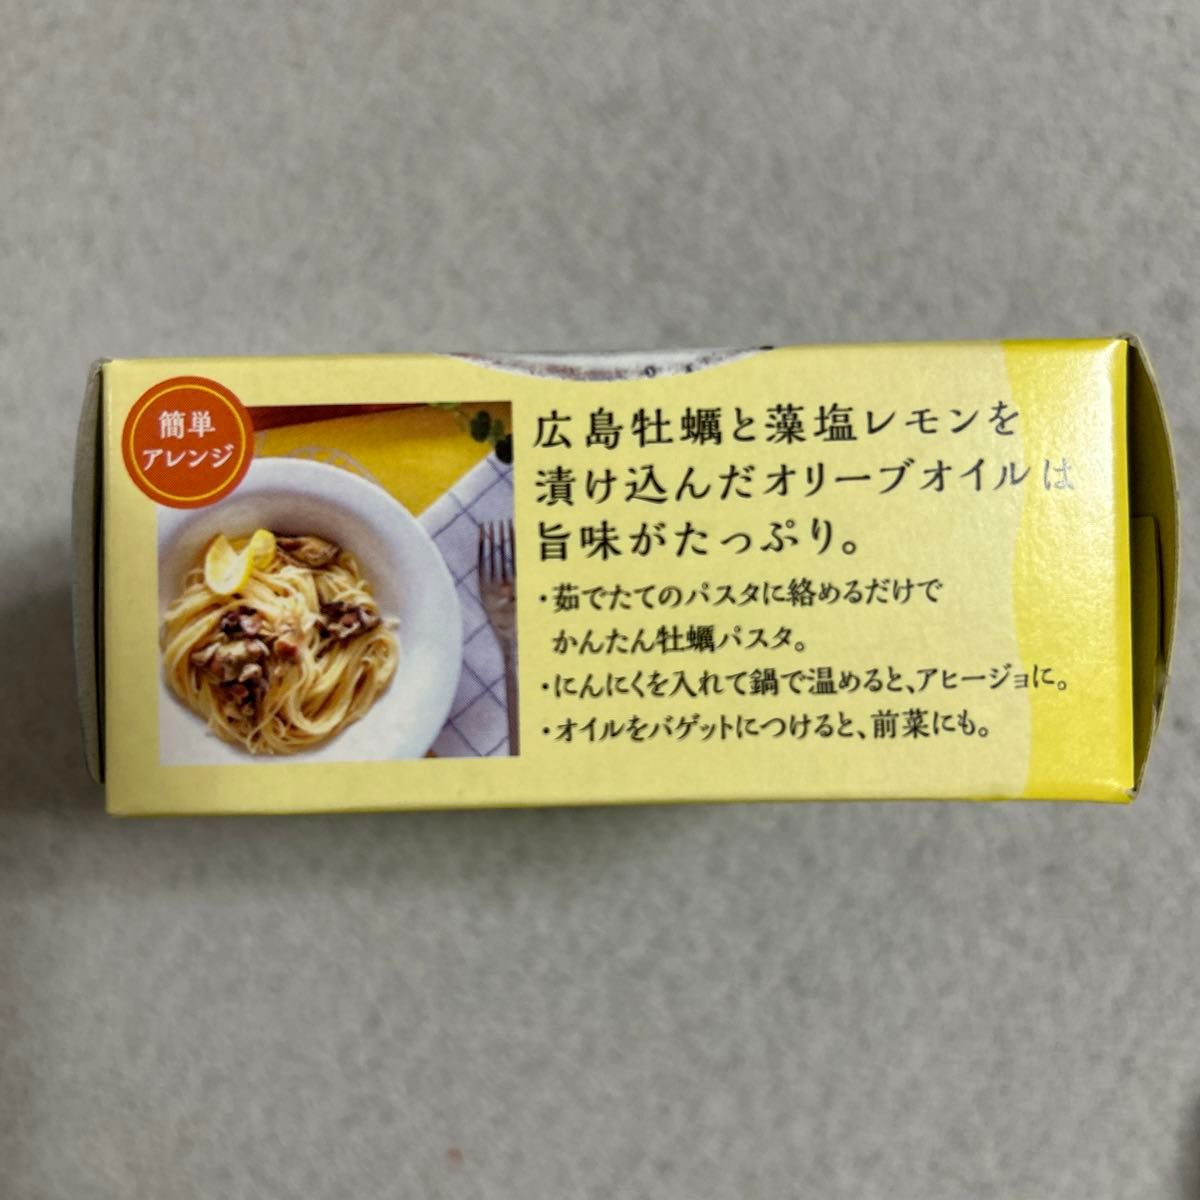 レモ缶 ひろしま 牡蠣 ひろしま牡蠣のオリーブオイル漬け 6箱セット